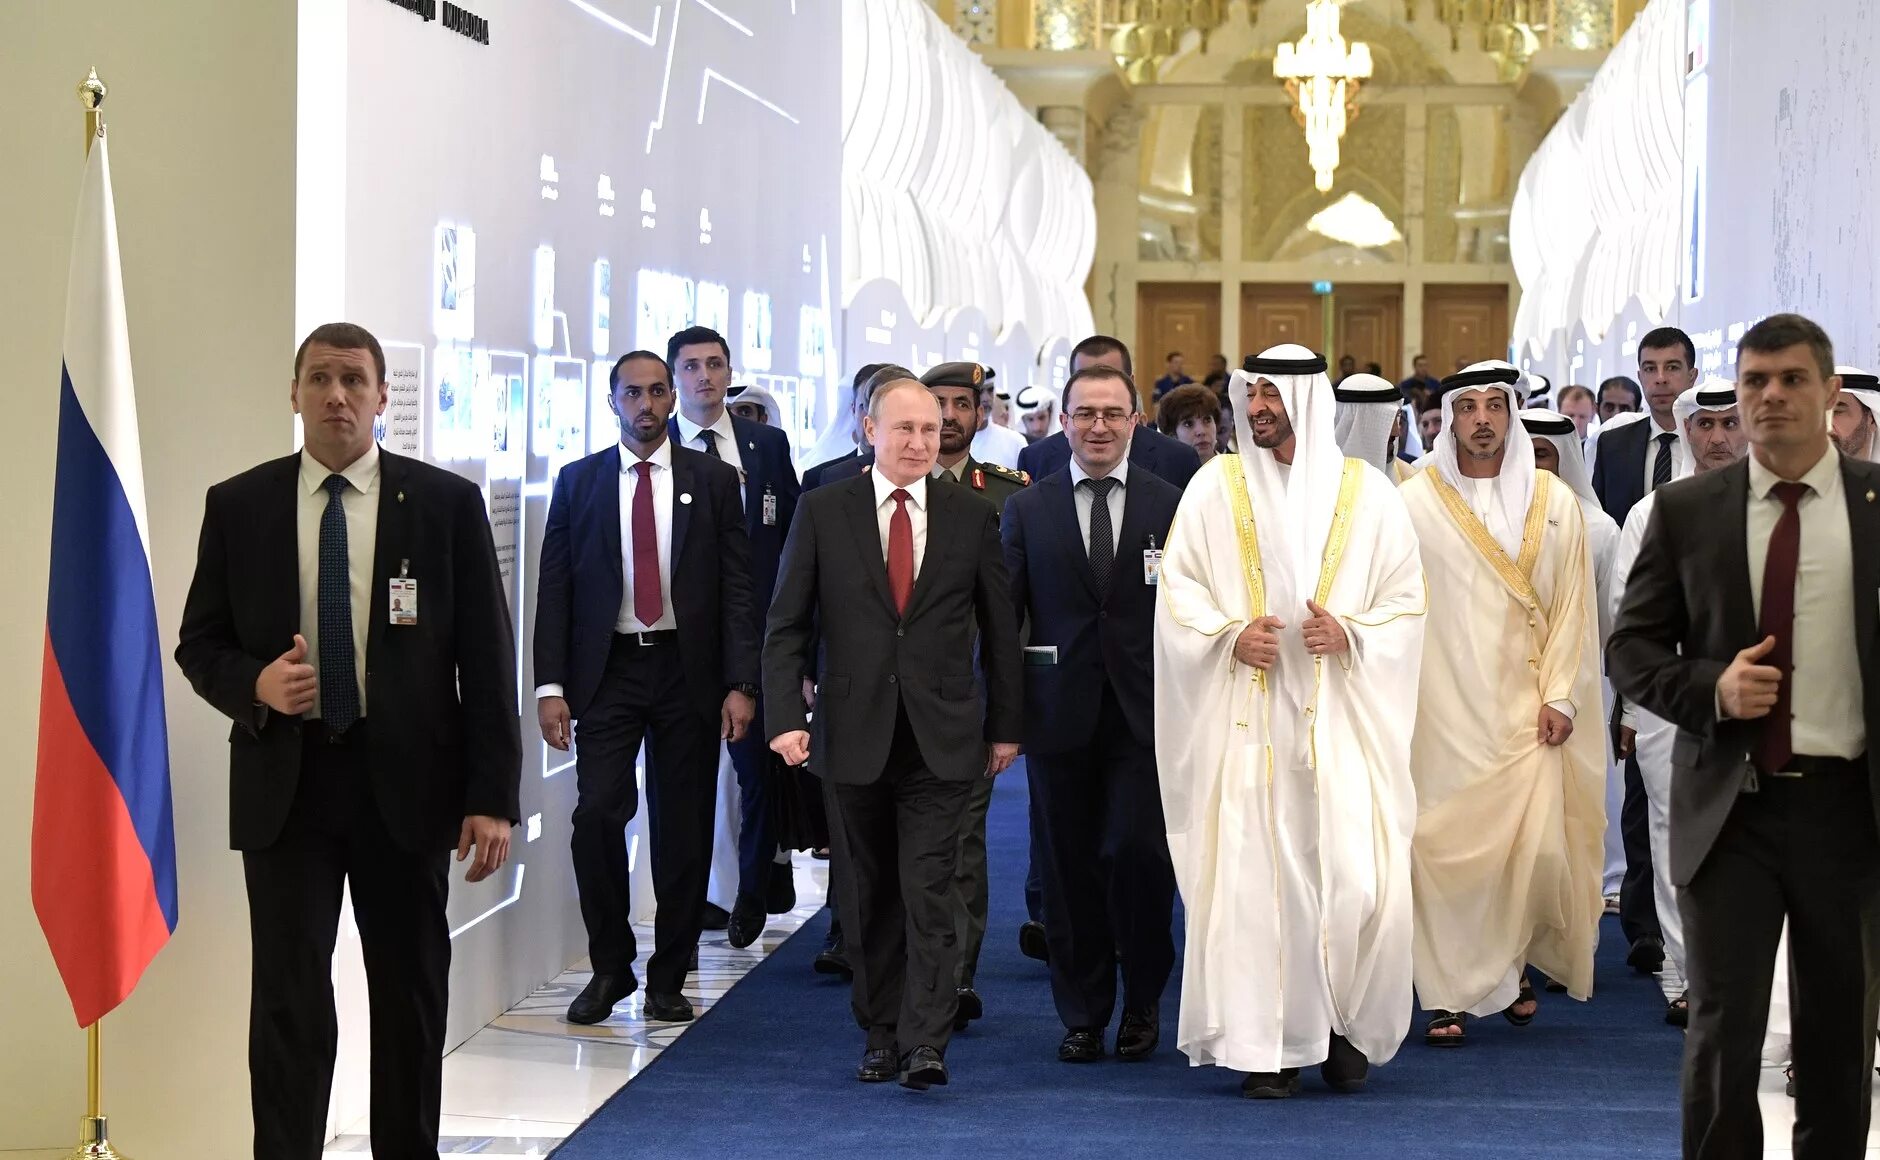 ОАЭ наследный принц Абу Даби. Визит Путина в ОАЭ 2019.